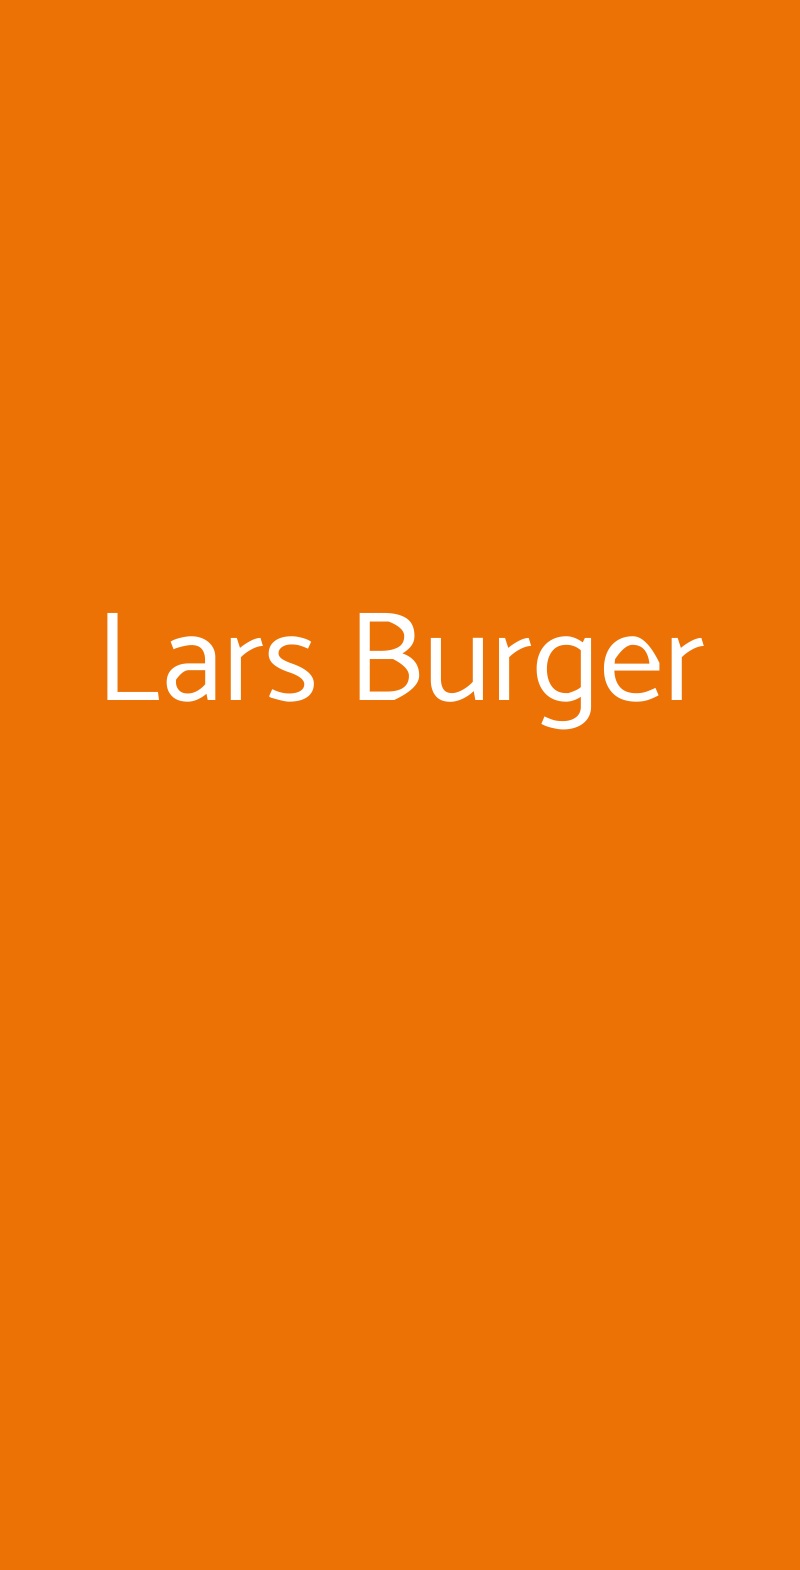 Lars Burger Milano menù 1 pagina